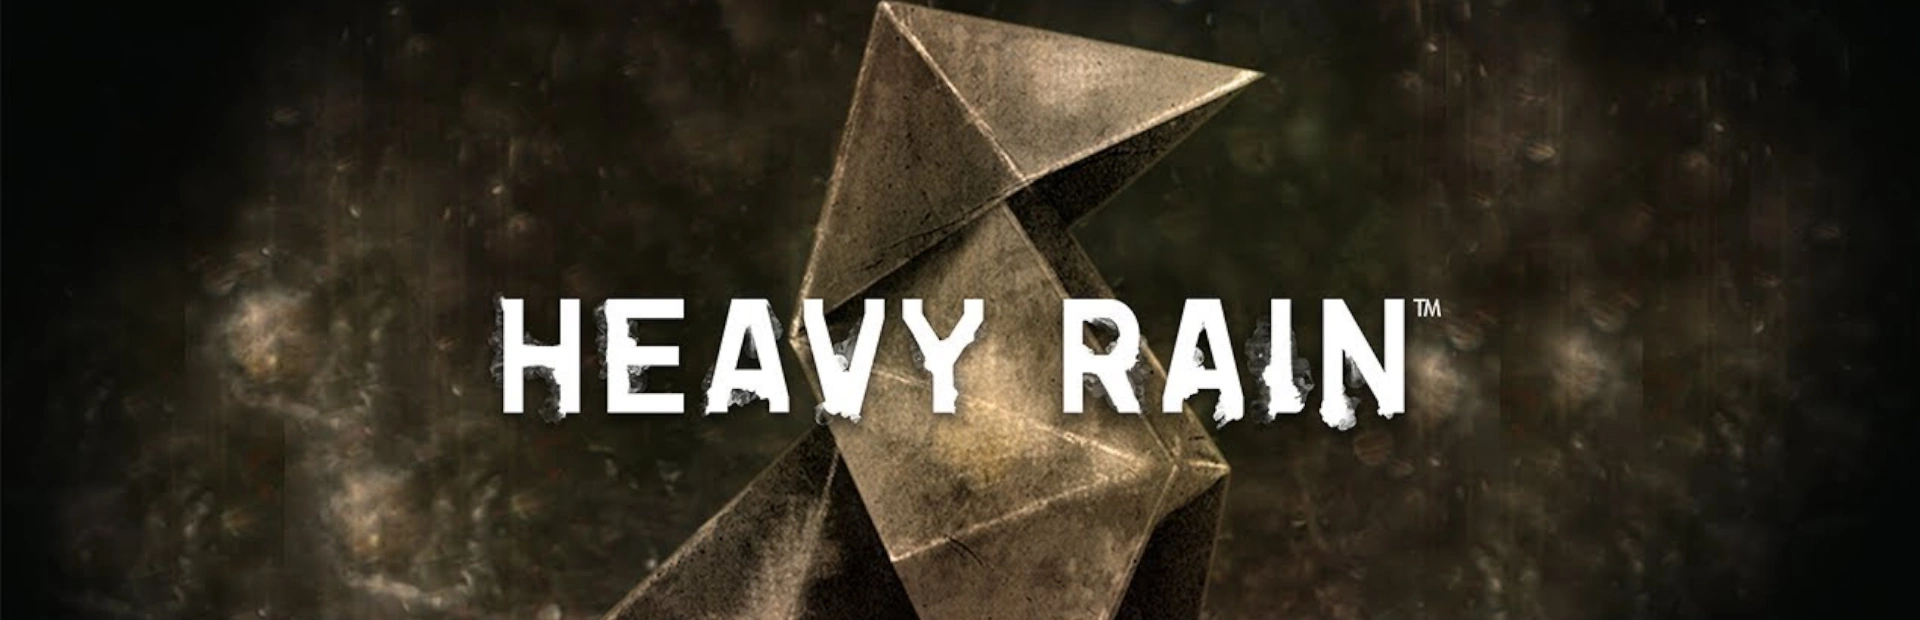 دانلود بازی باران سنگین Heavy Rain برای PC | گیمباتو